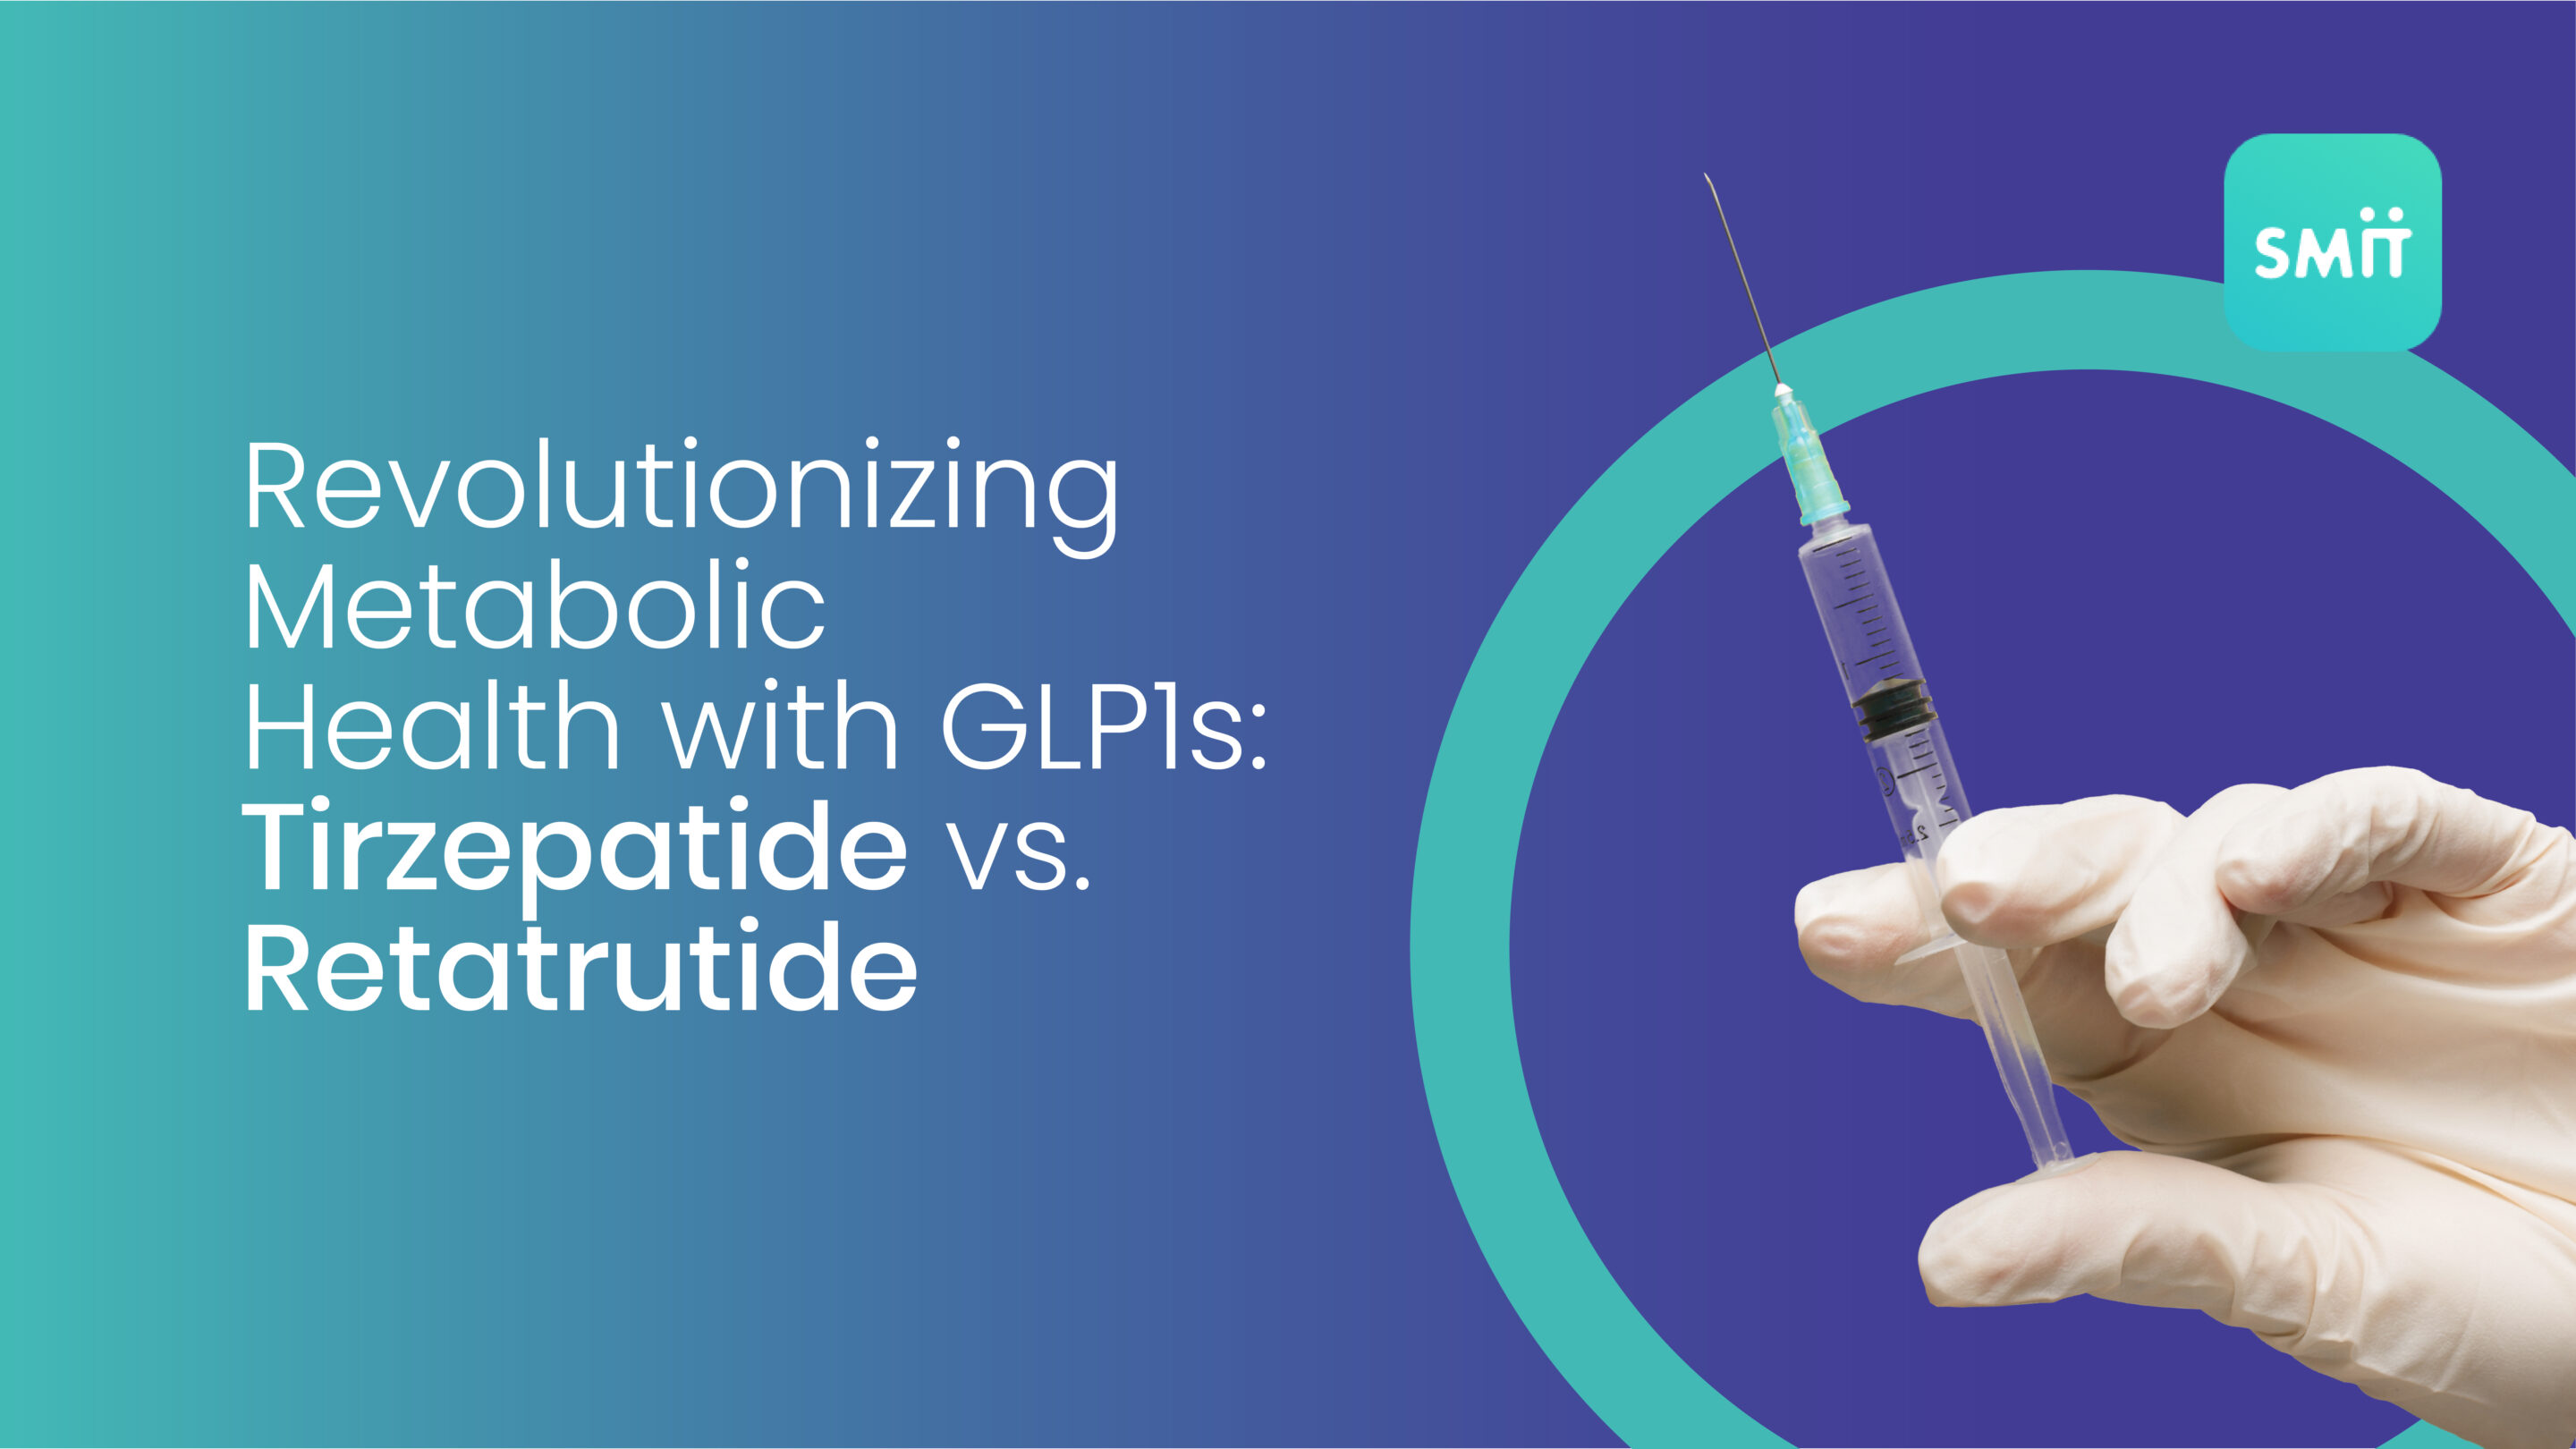 Revolutionizing Metabolic Health with GLP1s: Tirzepatide vs. Retatrutide